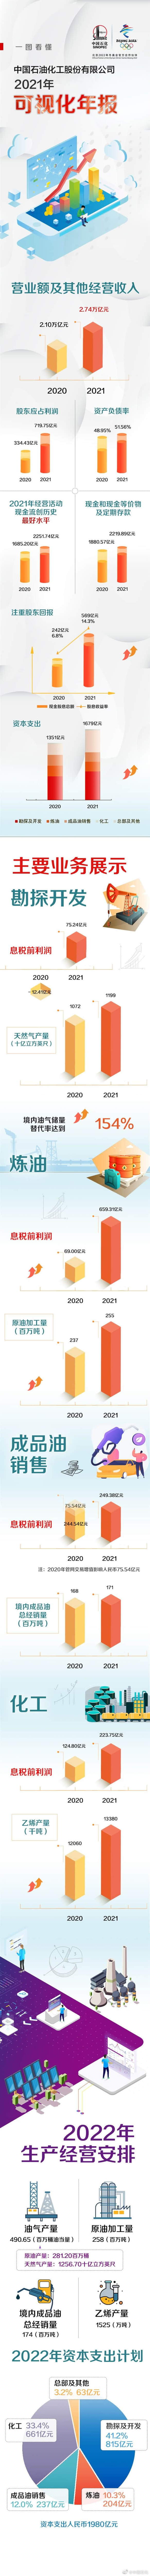 中国石化2021年营收2.74万亿 现金流创历史新高